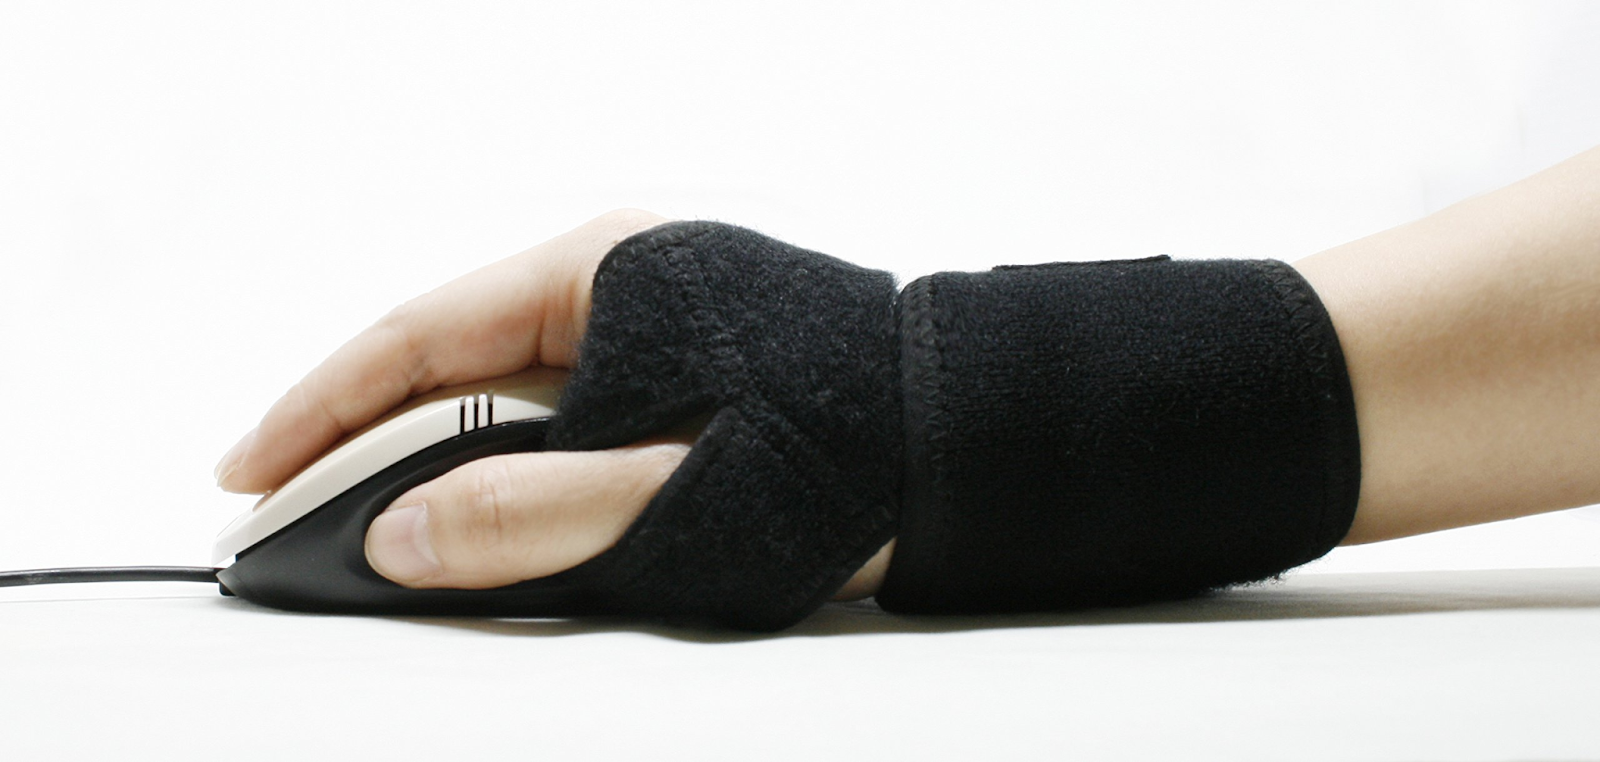 Sử dụng băng đai bảo vệ cổ tay và ngón tay để trợ lực cho gân ngón tay